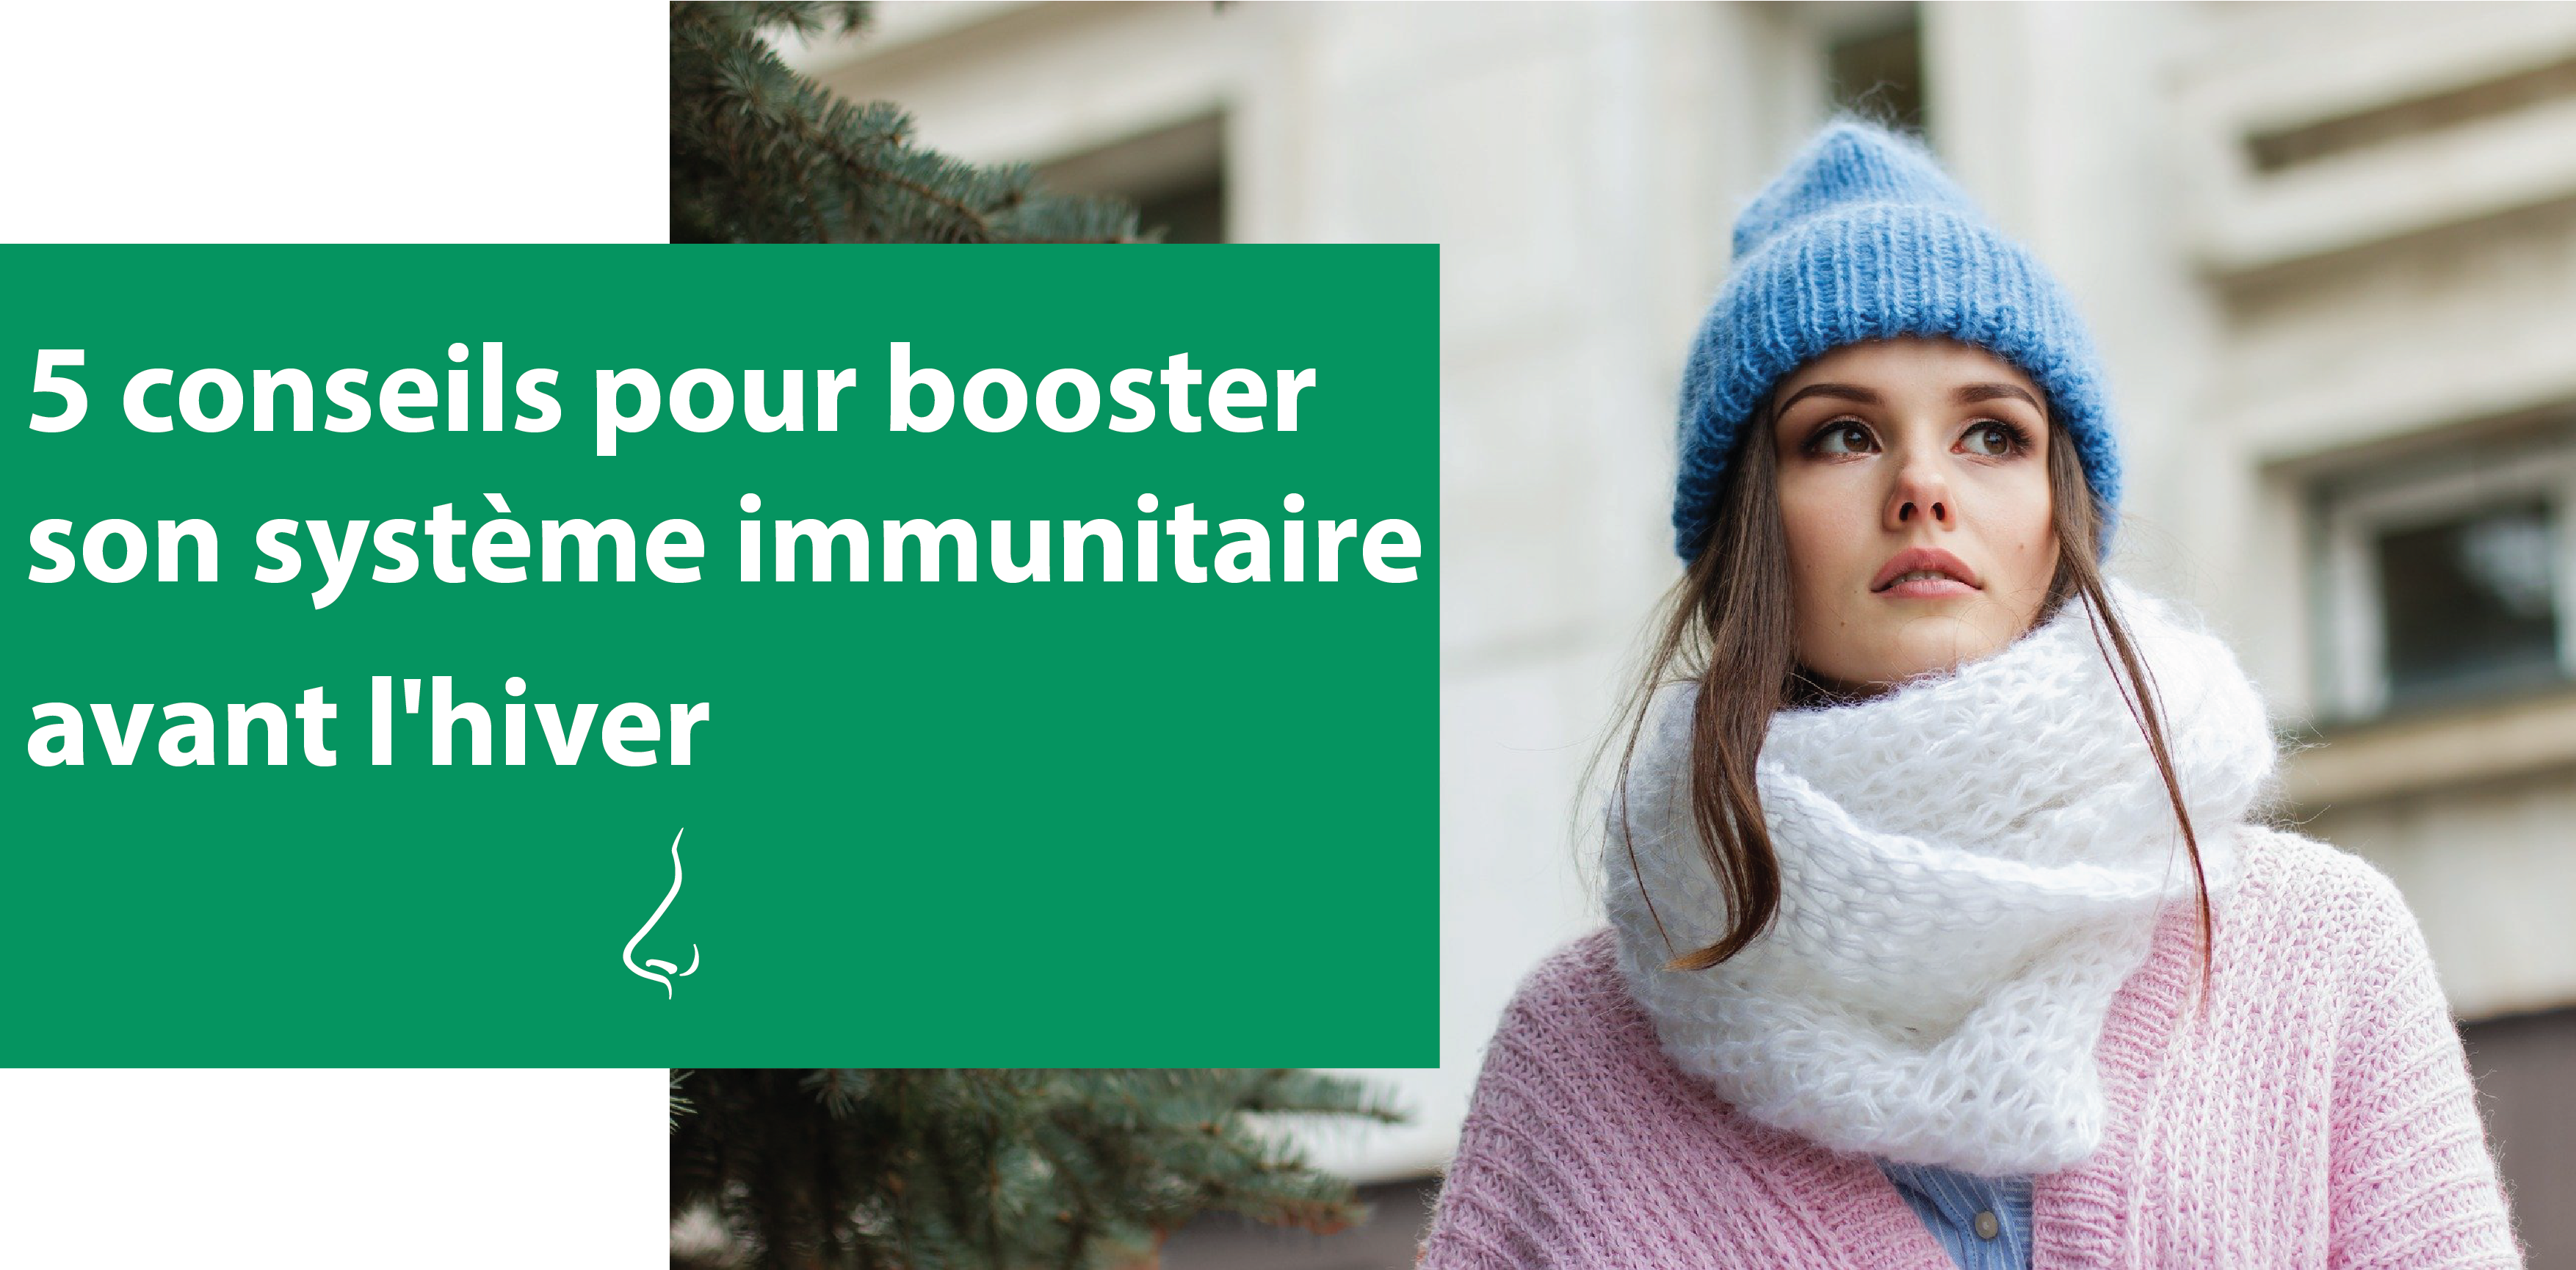 5 conseils pour booster son système immunitaire avant l'hiver